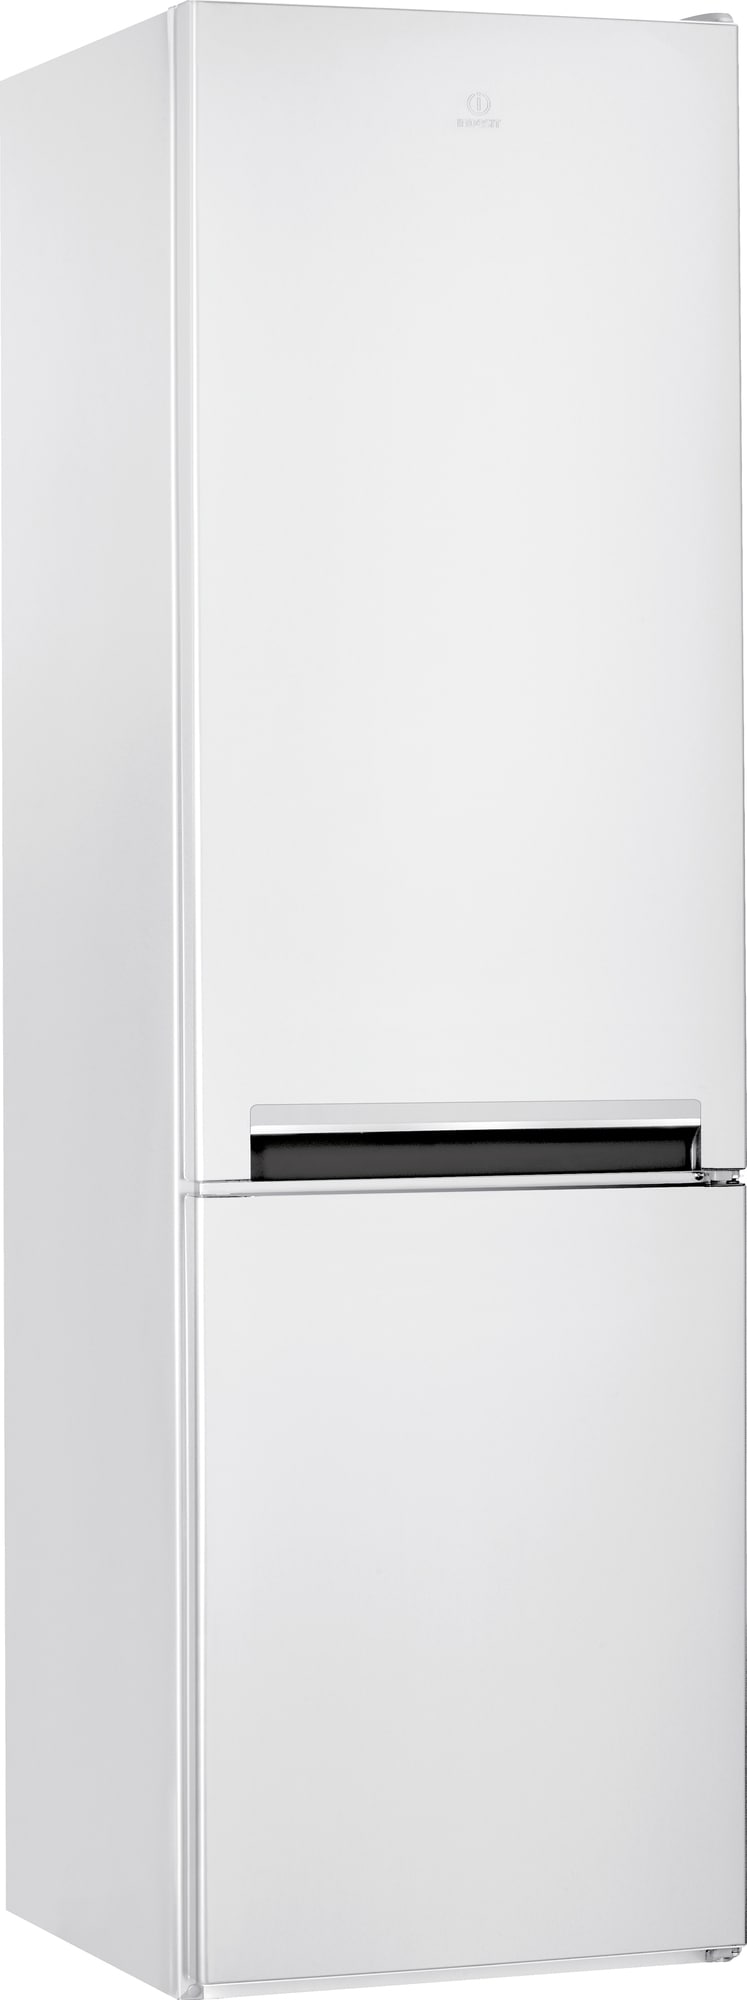 Billede af Indesit køleskab/fryser LI9S1EW (hvid)